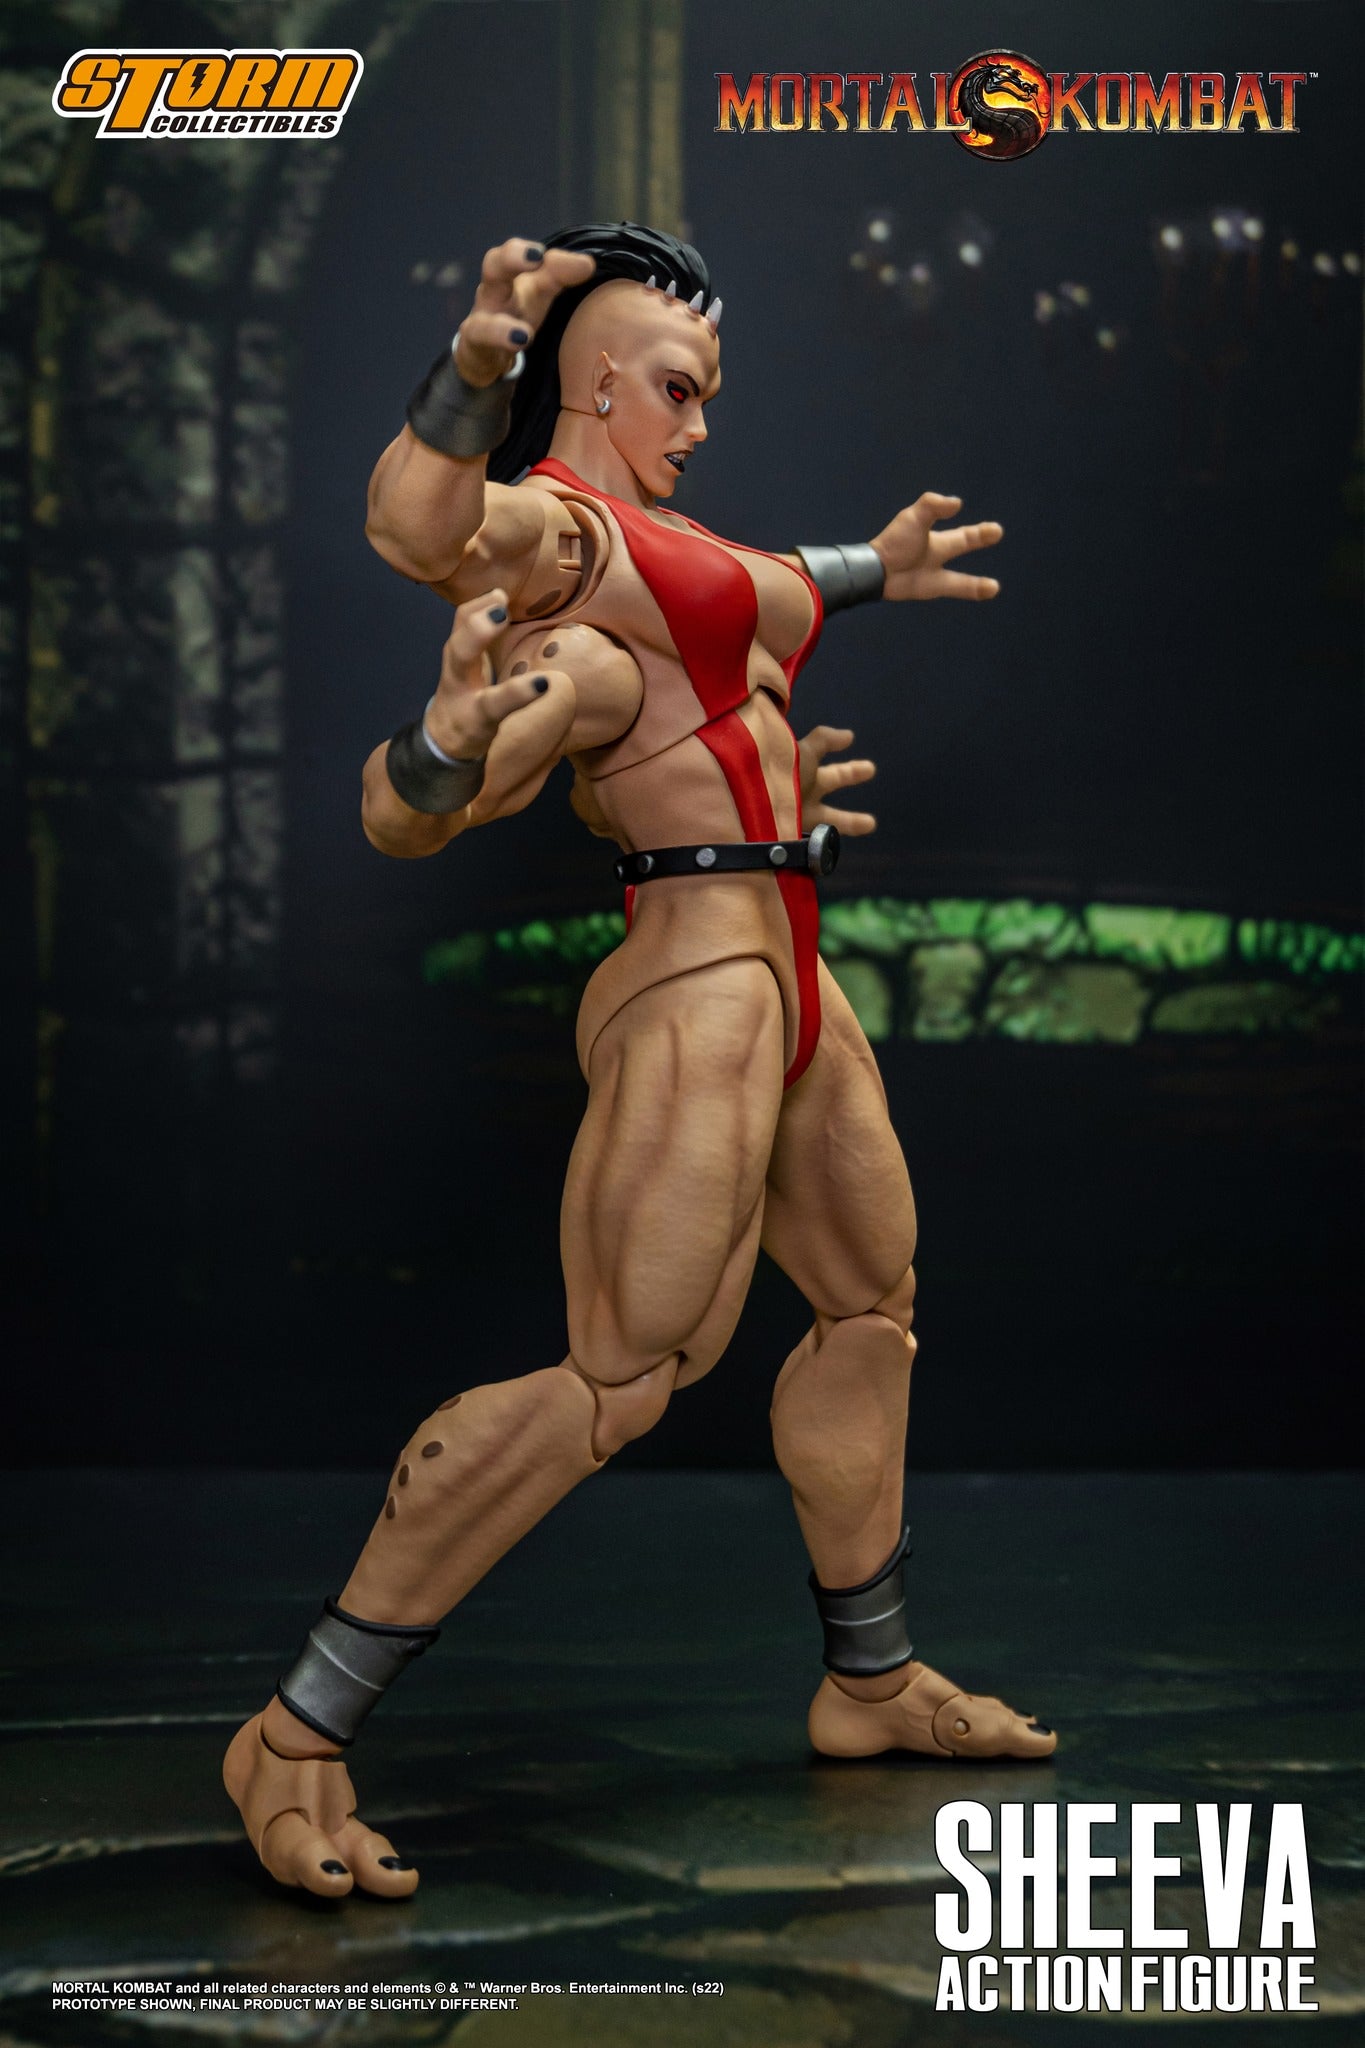 Preventa Figura Sheeva - Mortal Kombat marca Storm Collectibles escala 1/12